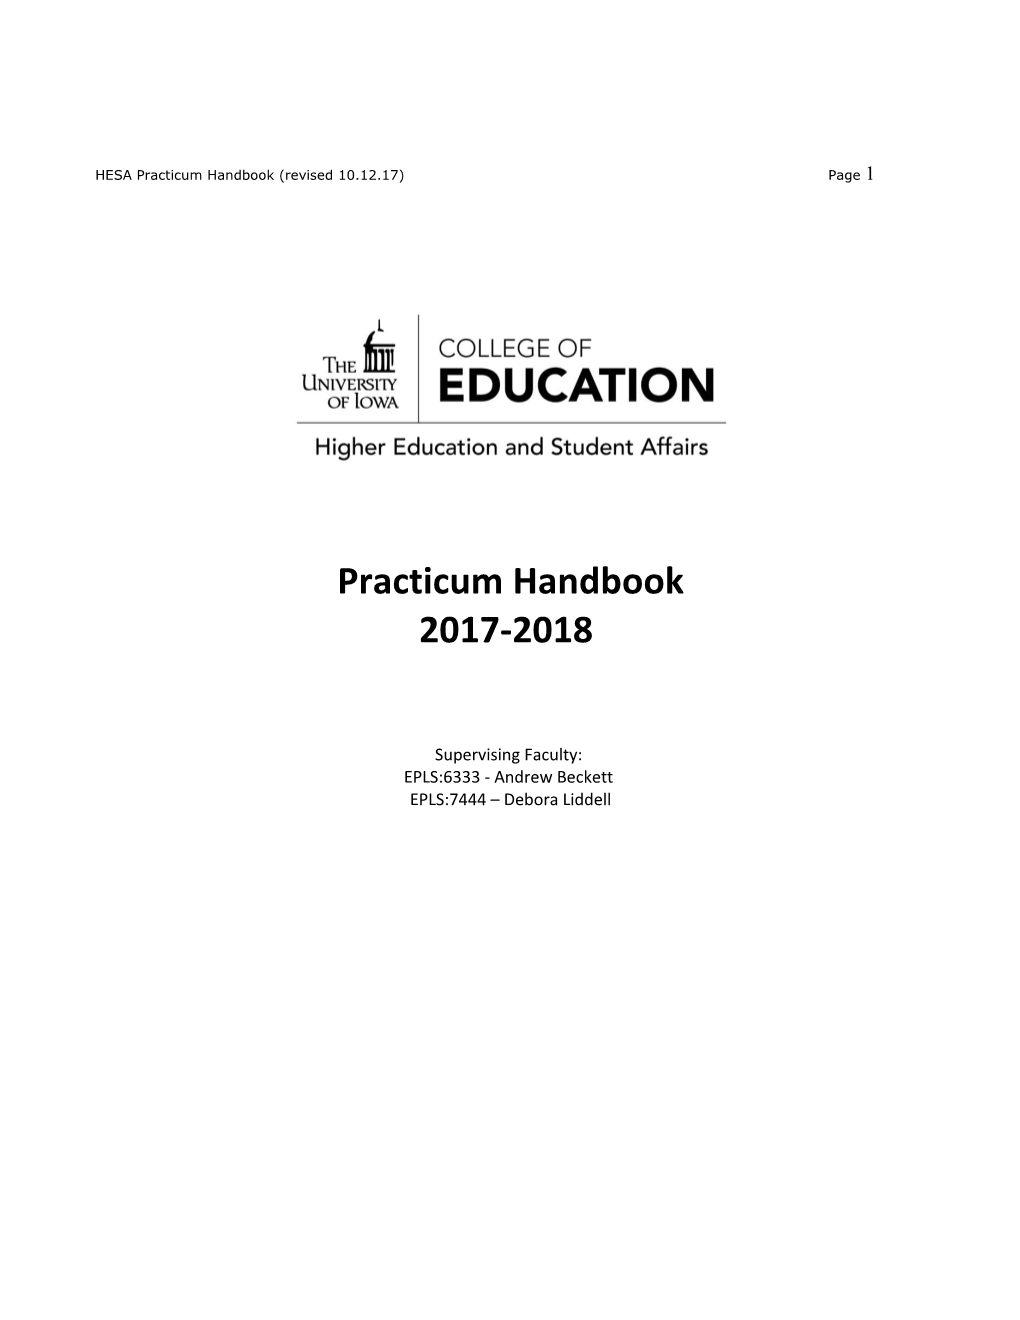 HESA Practicum Handbook (Revised 10.12.17)Page 1